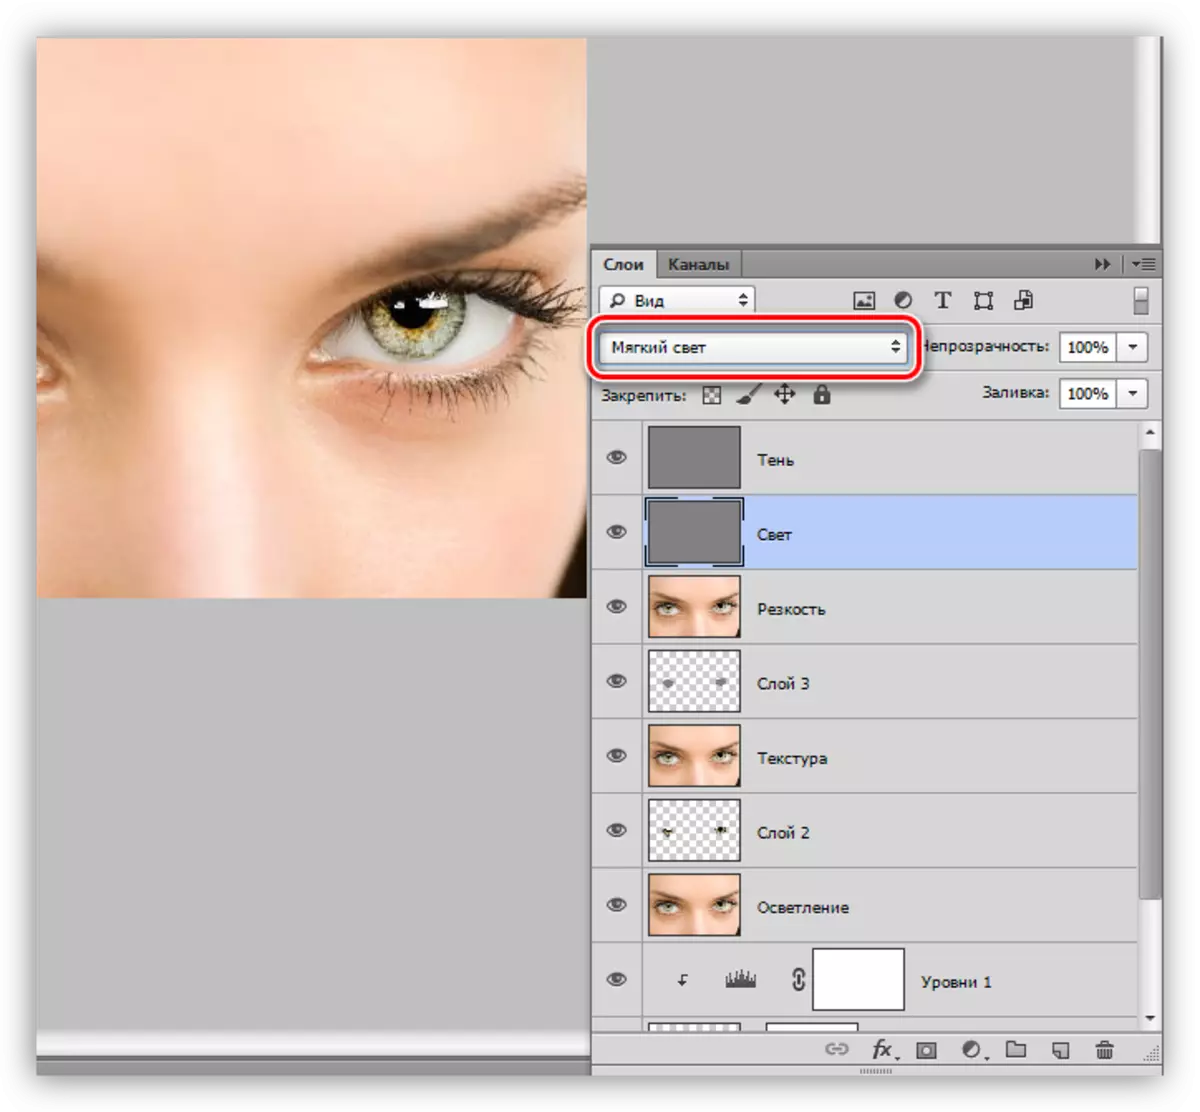 שינוי מצב לאור רך עבור כל שכבה בעת בחירת עין ב- Photoshop